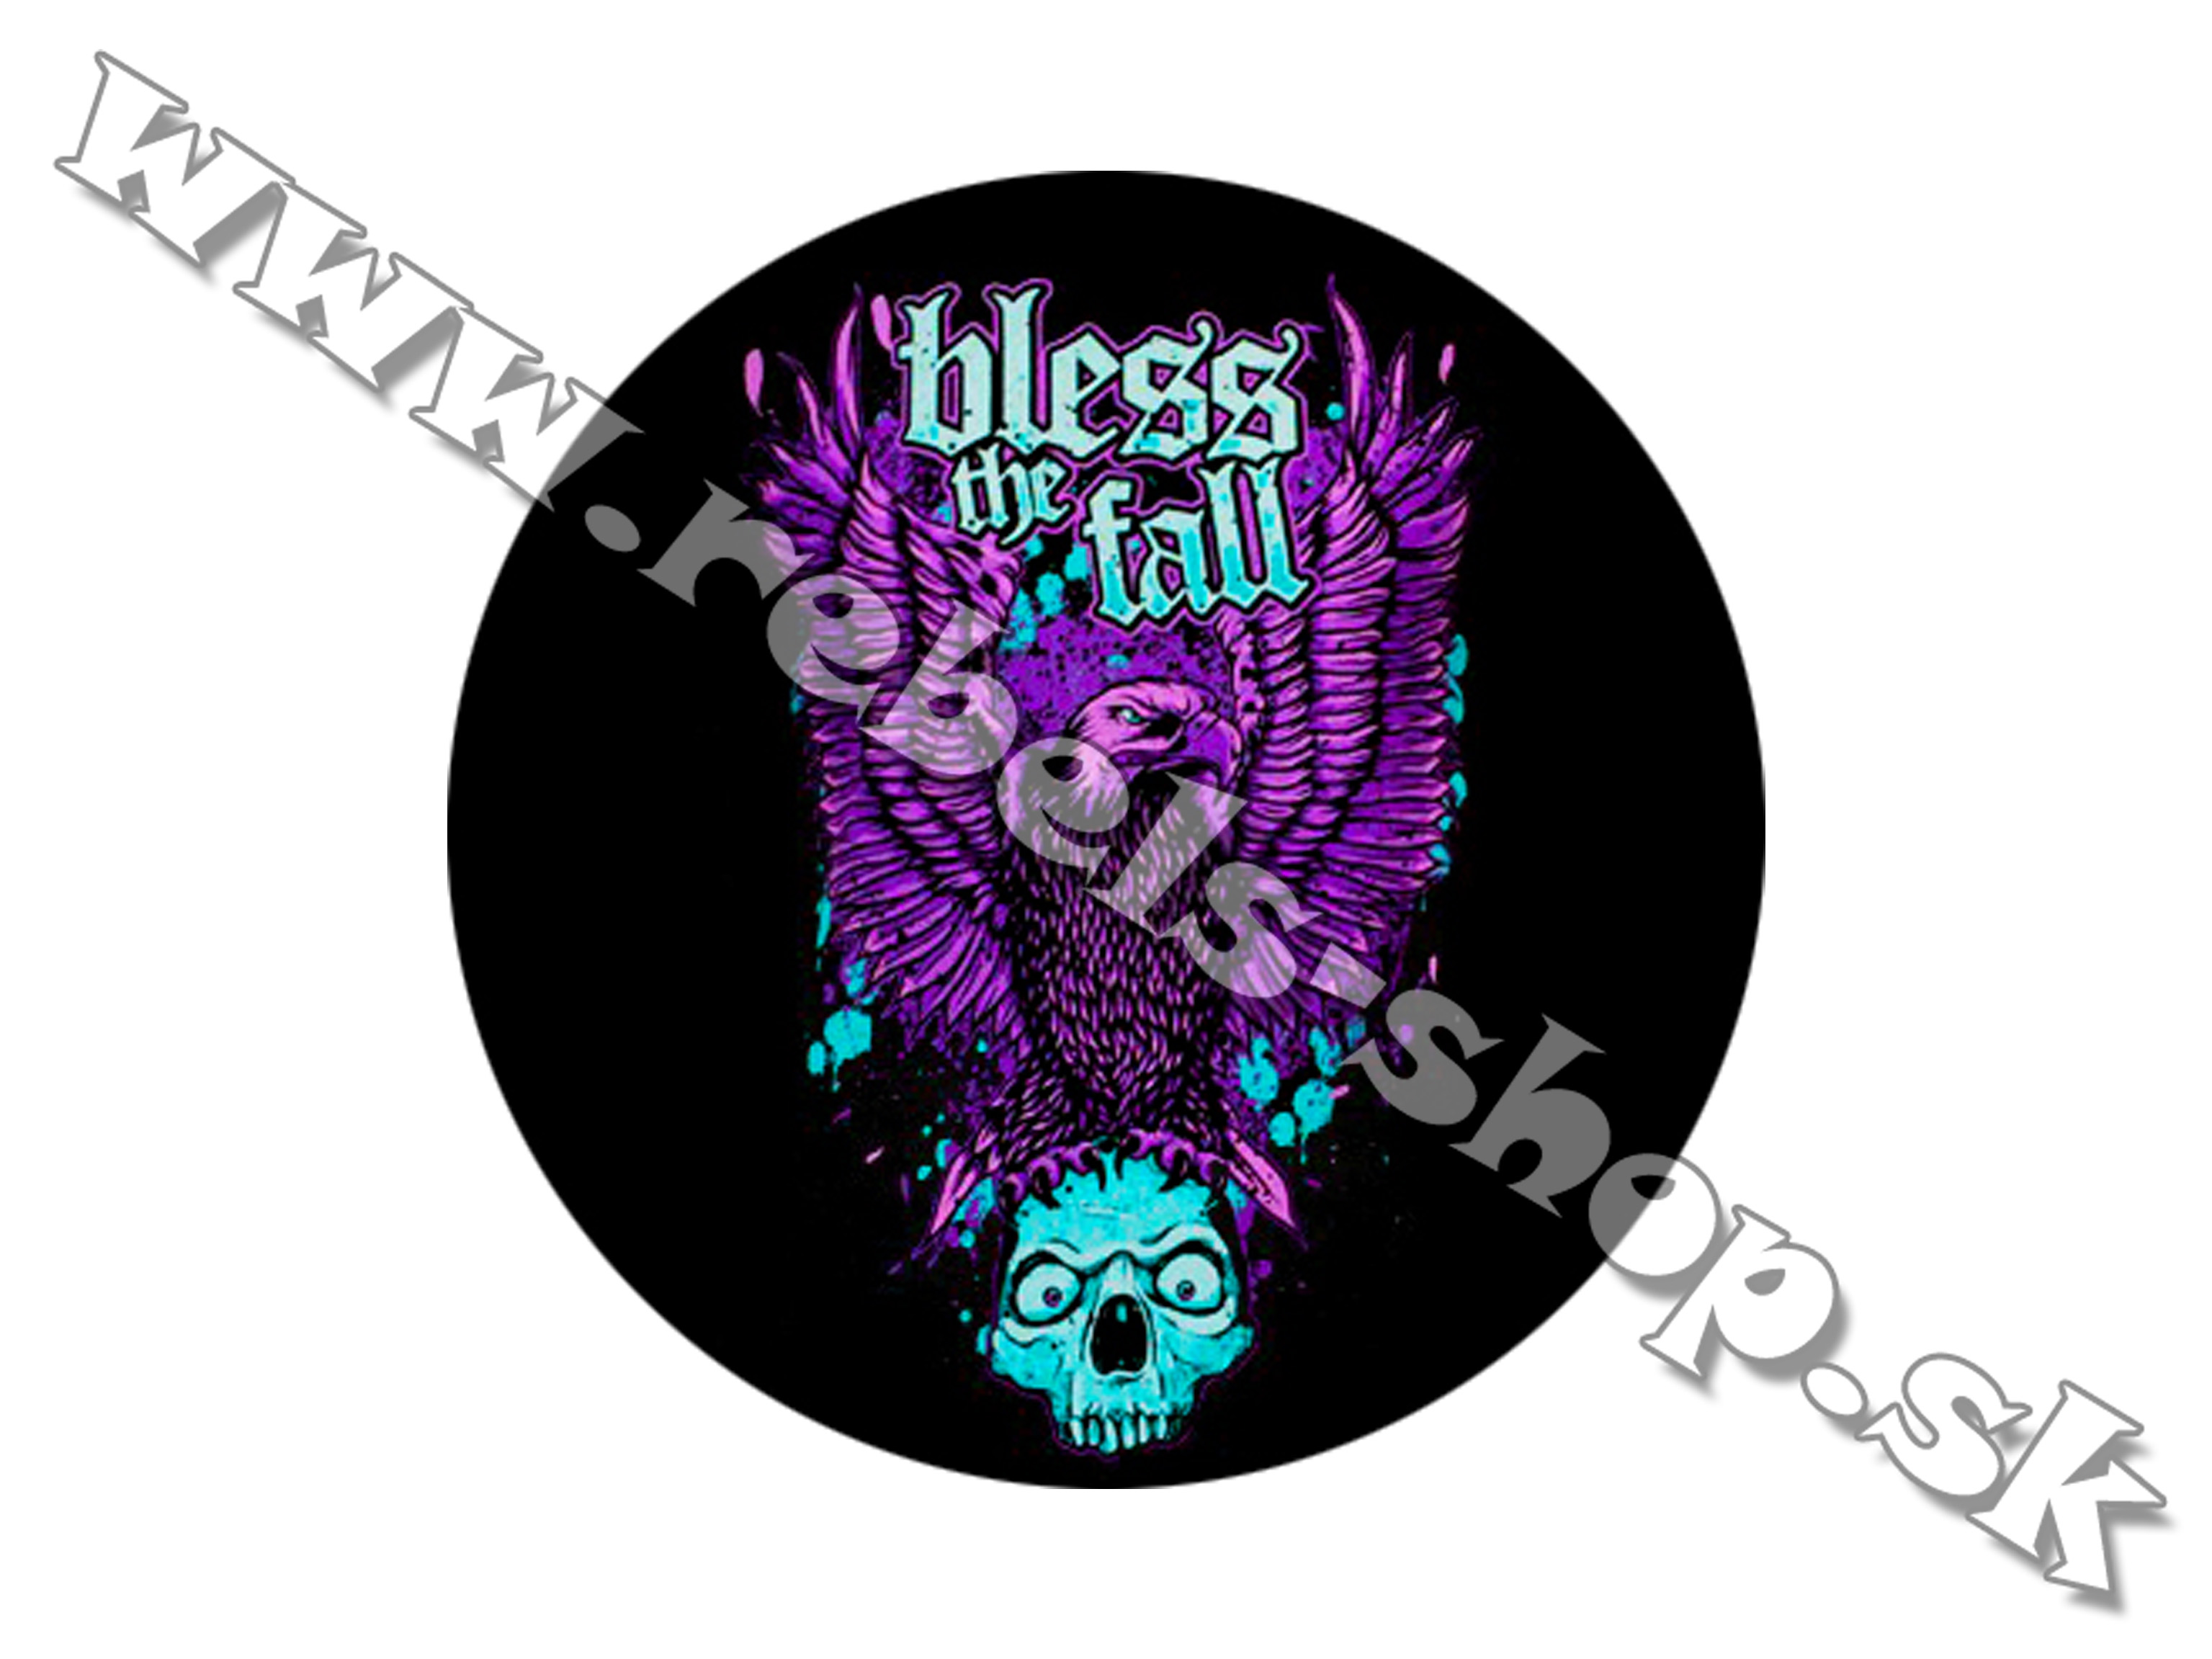 Odznak "Blessthefall"